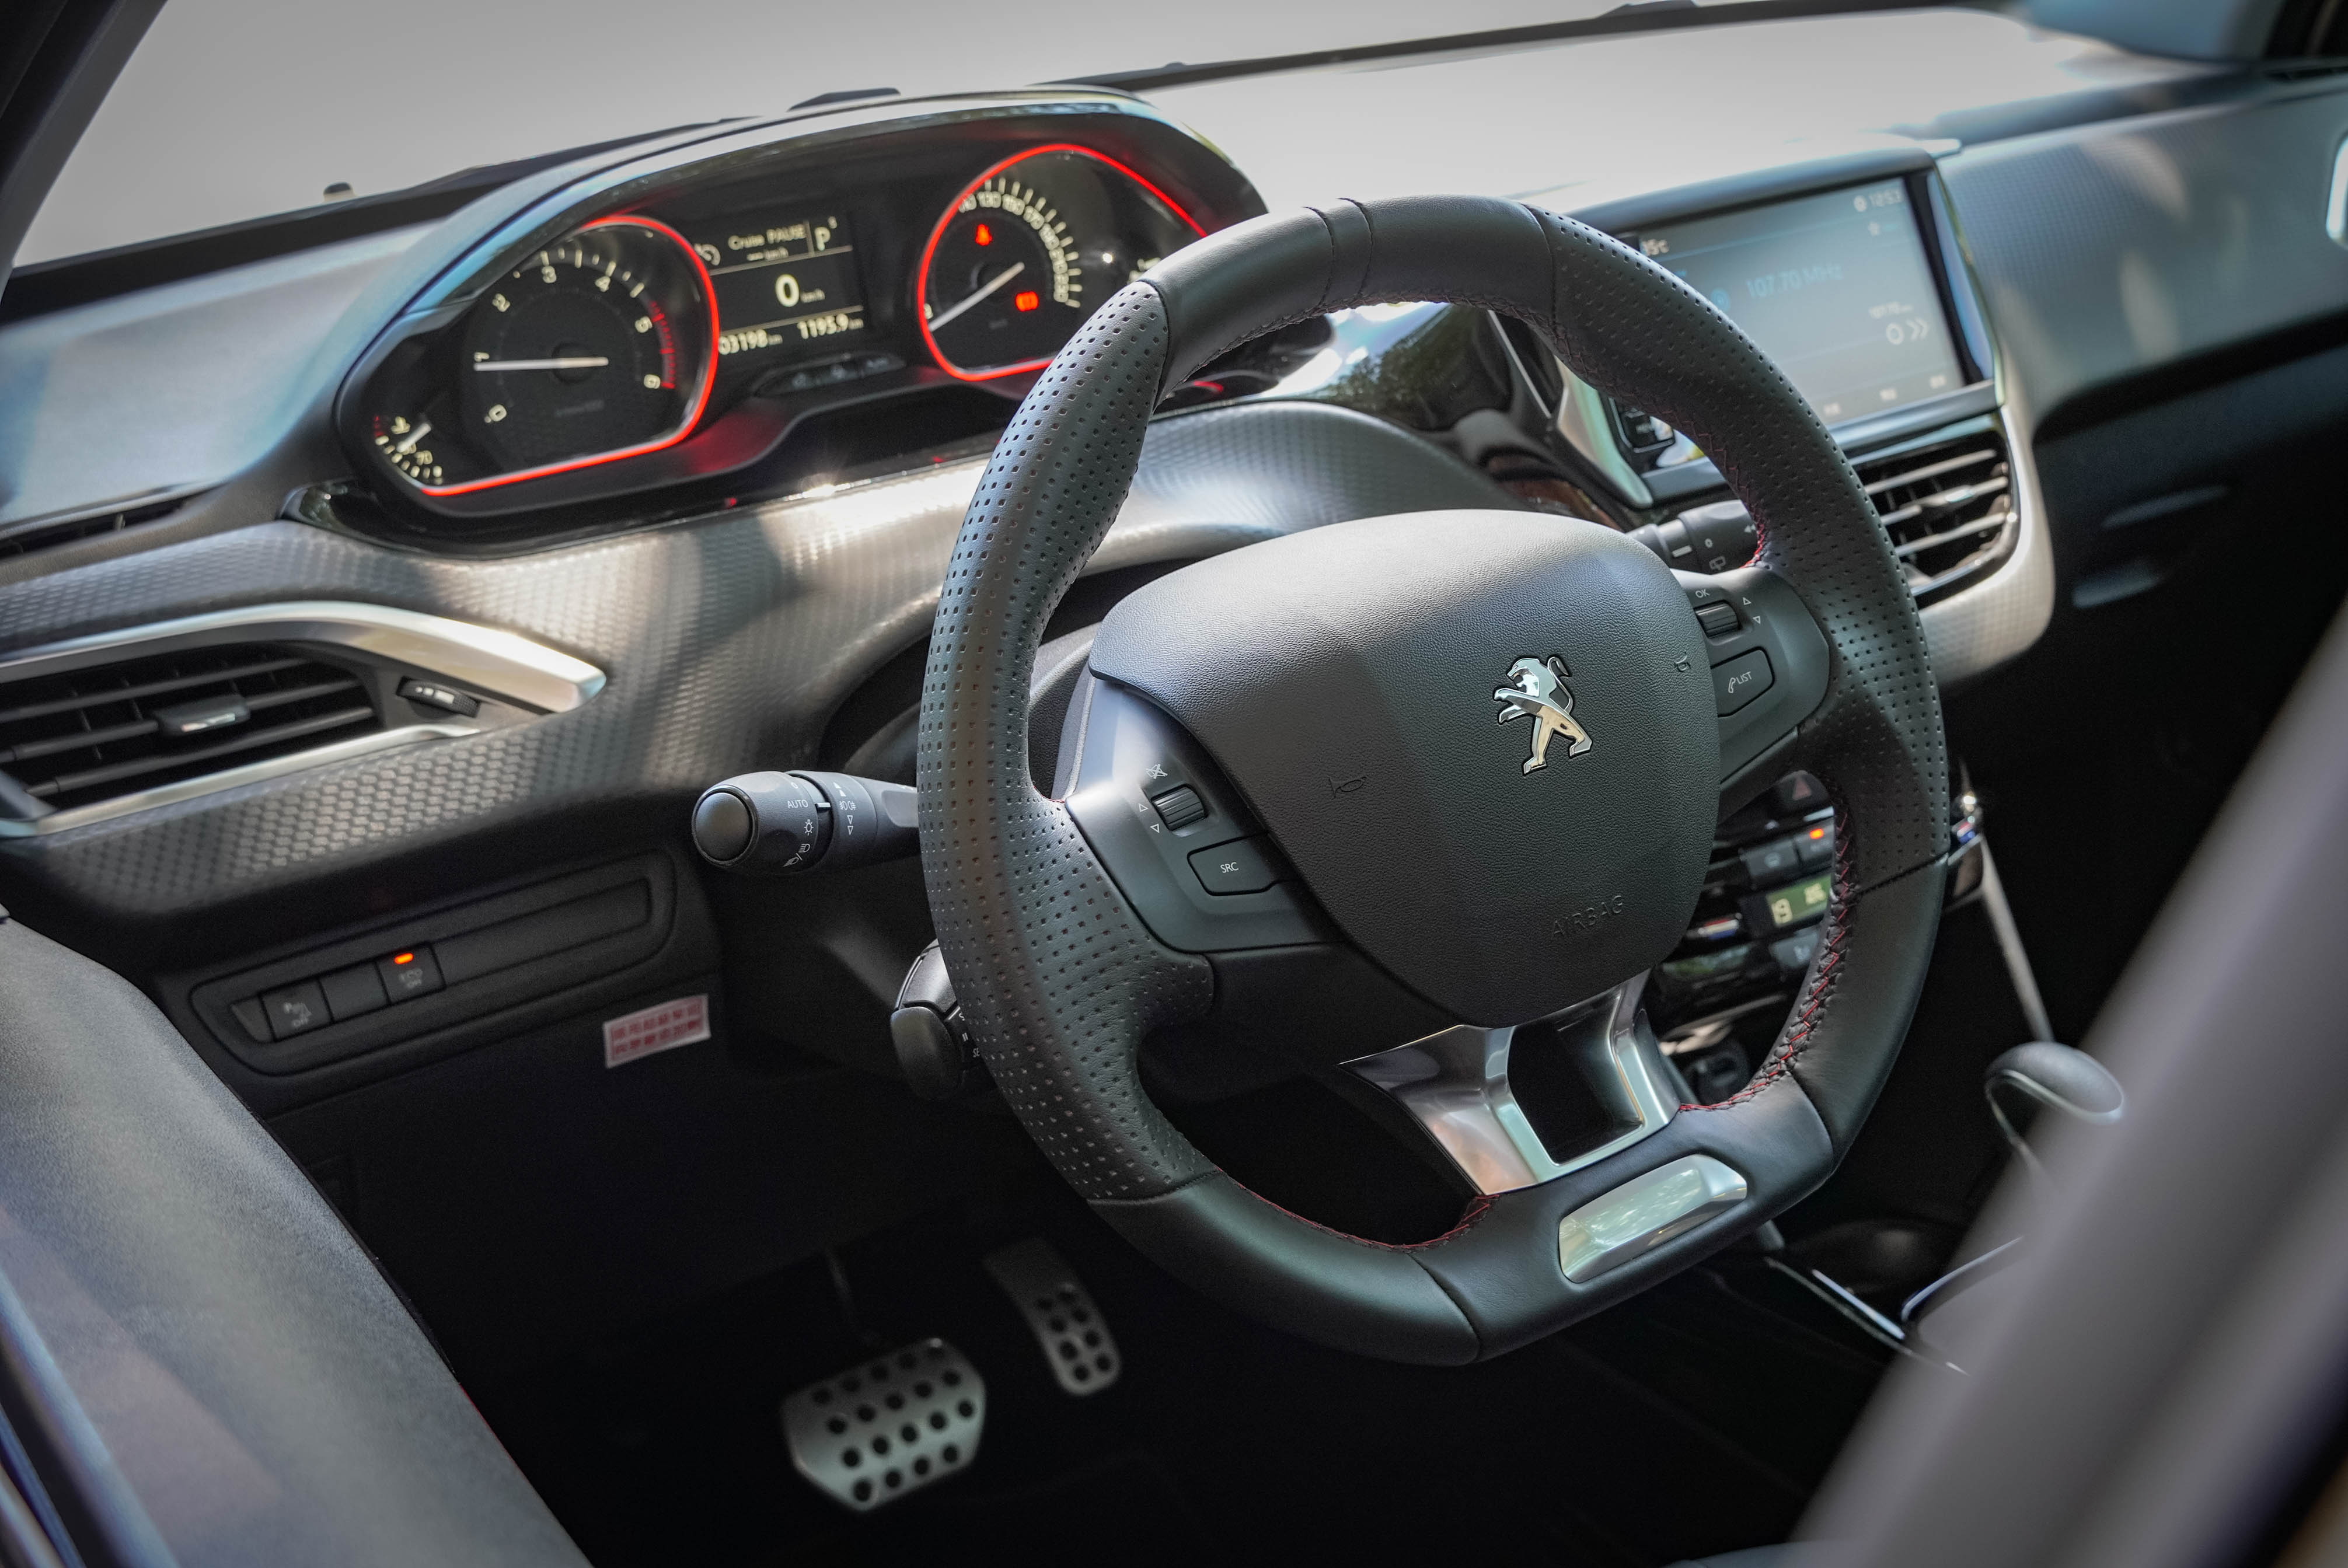 懸浮式抬頭顯示儀錶板與小盤徑方向盤是 Peugeot 識別度極高的設計。